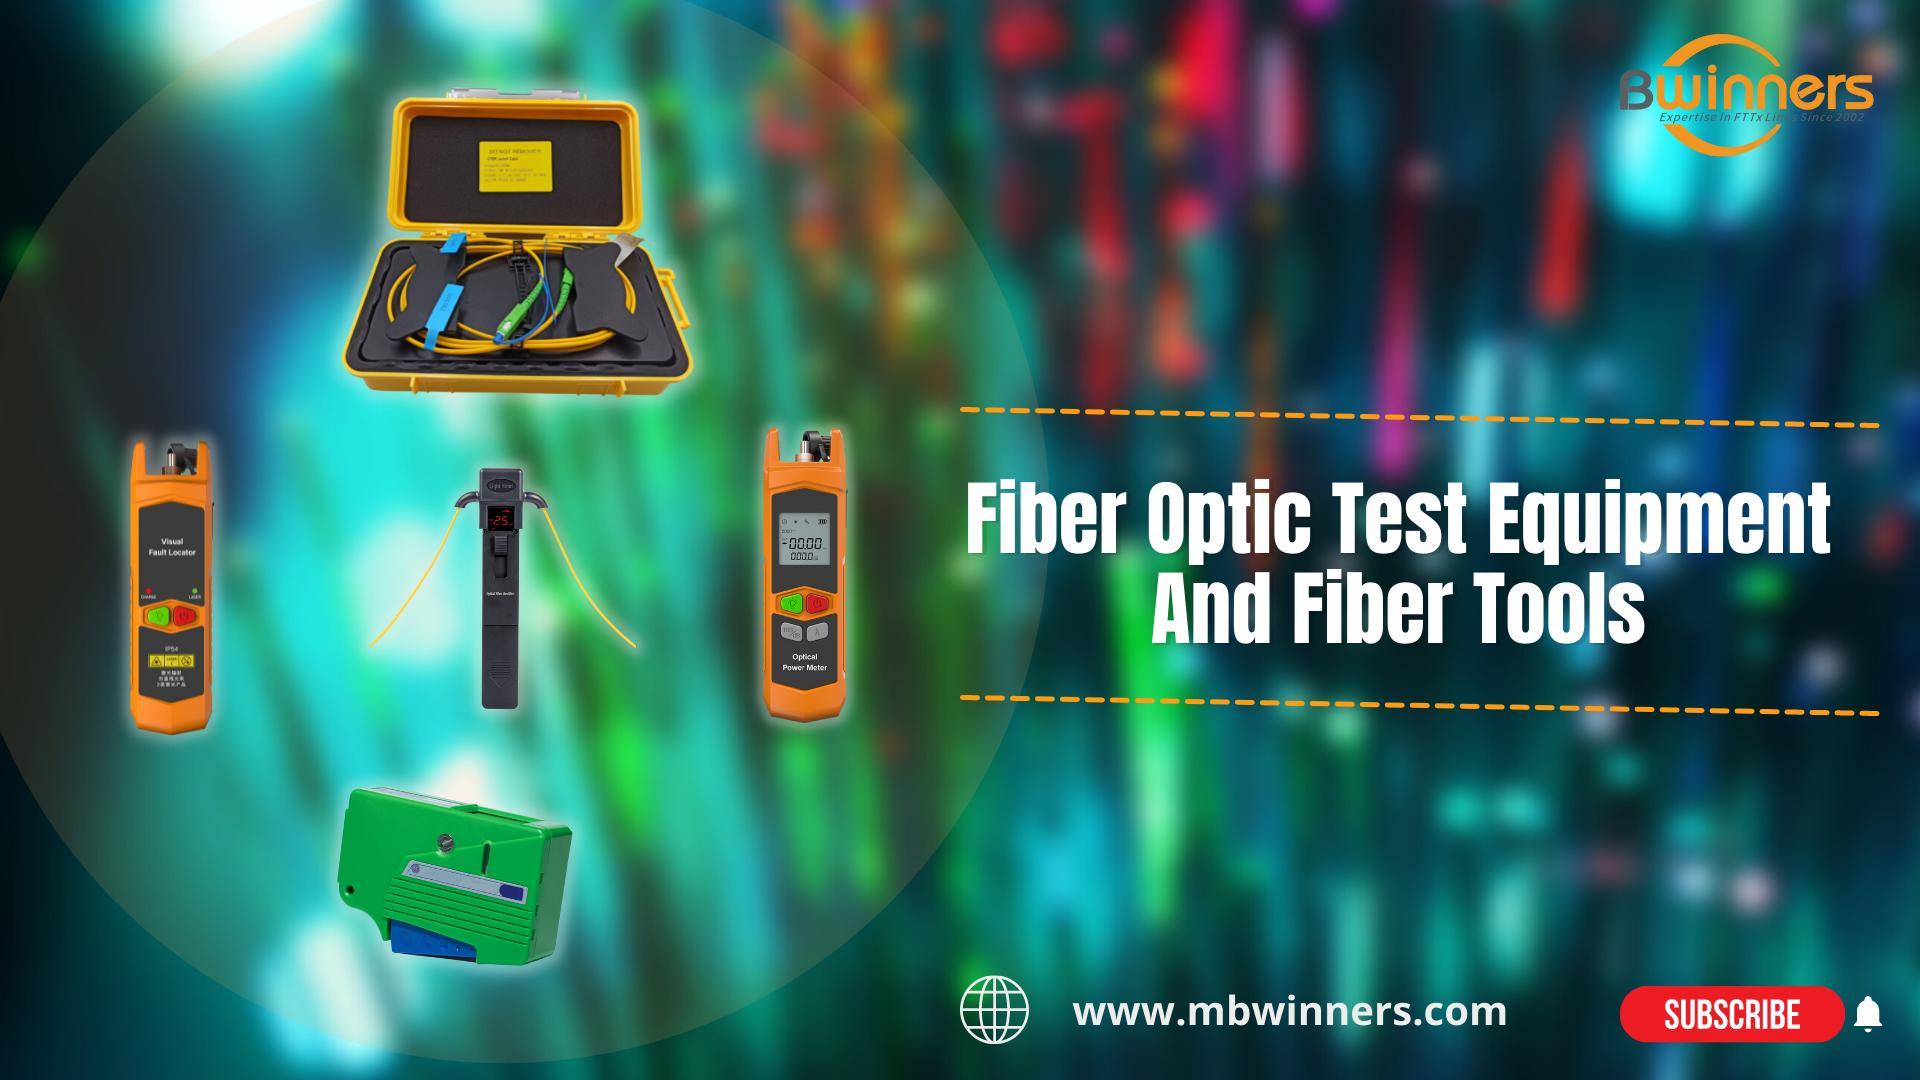 BWN-OTDR-LC2 in fibra di lancio in fibra | Identificatore in fibra vivo MBN-OFI-35 | Fibra MBN-VFL-30-C VFL | MBN-OPM-Mini Mini Power Meter | Cleaner in fibra MBN-OCC | Attrezzature per test a fibra ottica e strumenti in fibra | #FTth #FTTX |. Bwinners.